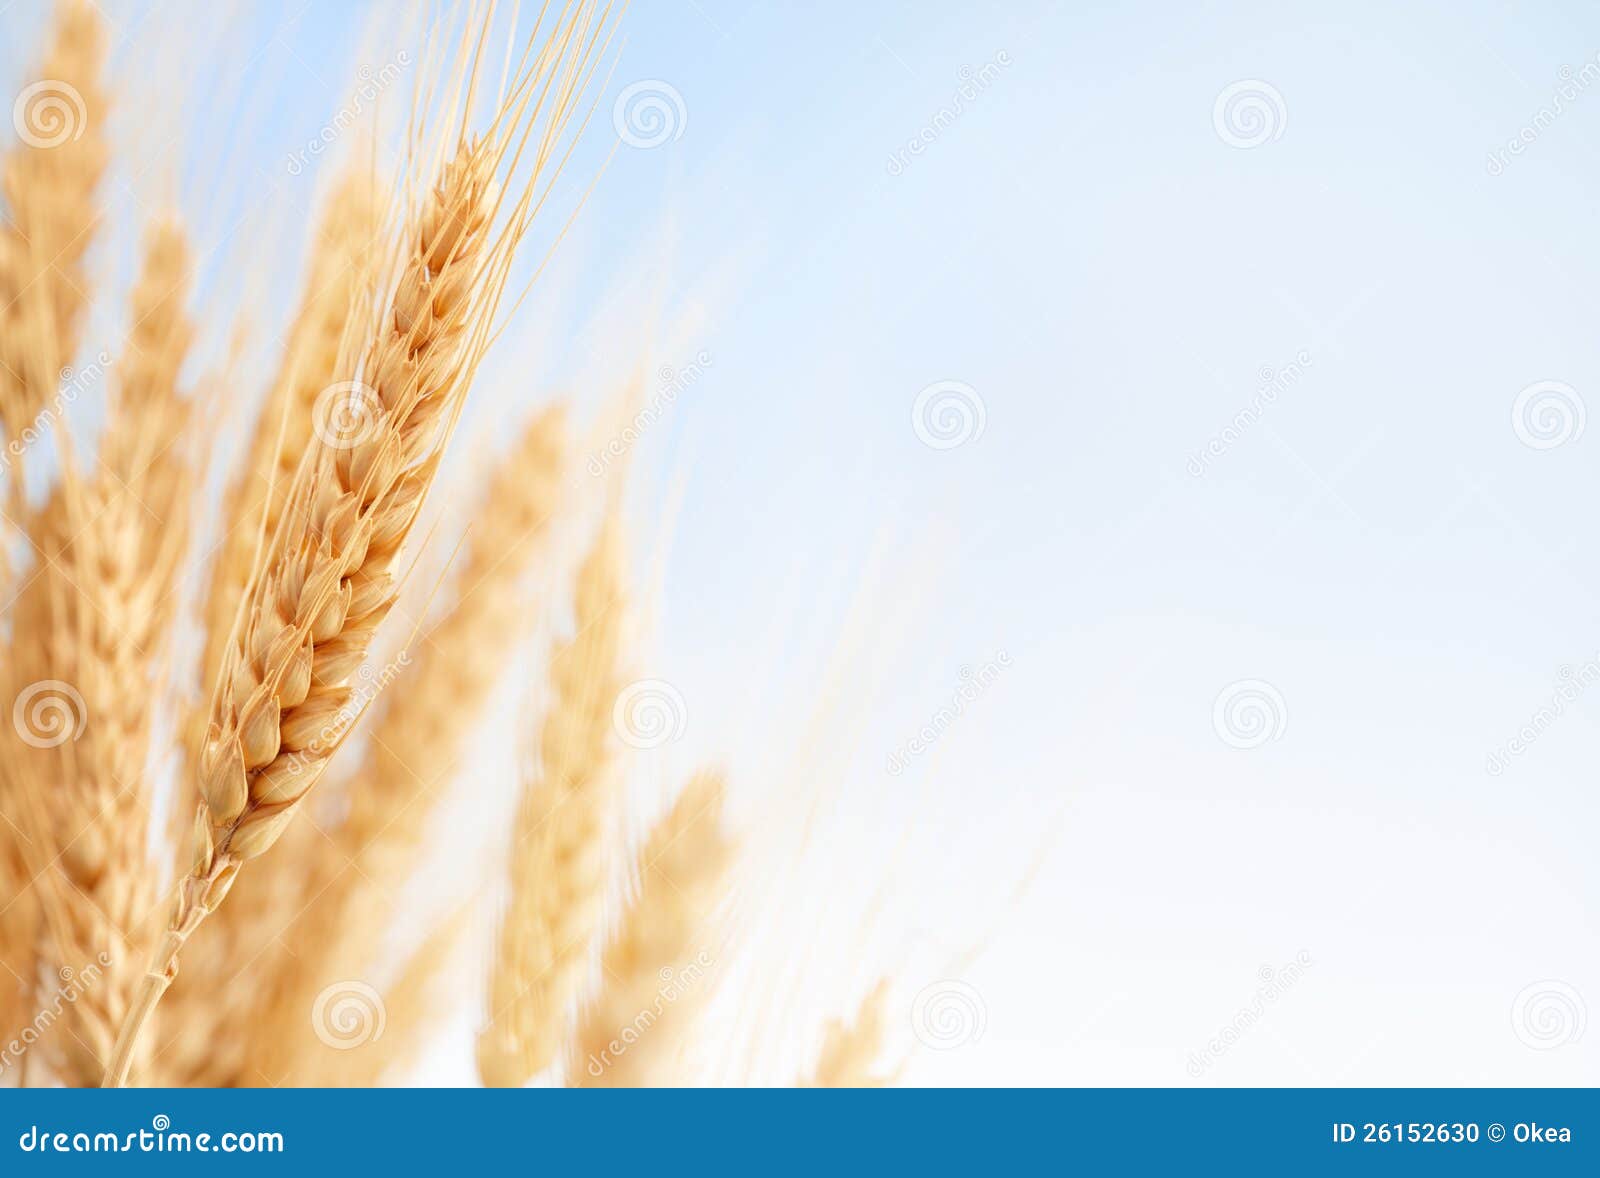 wheat ears in the farm